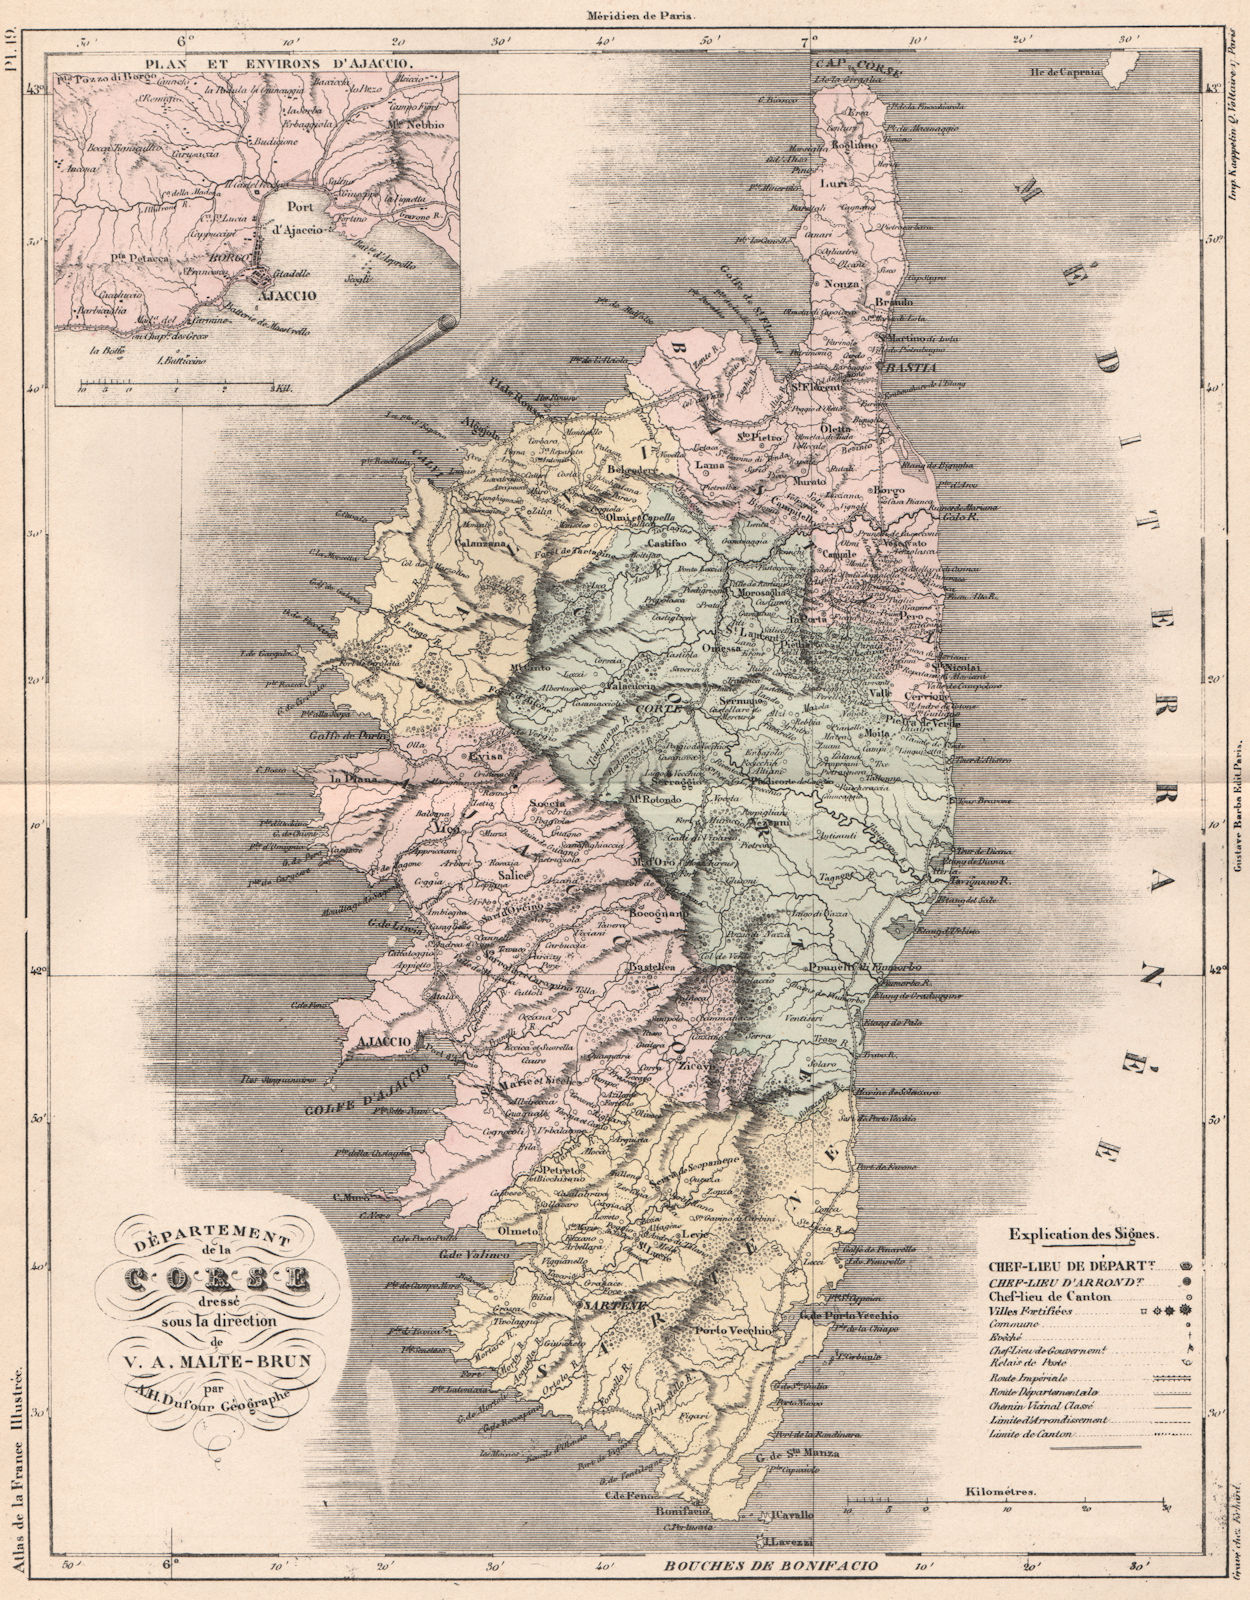 CORSICA. Corse (Corsica) . d'Ajaccio. MALTE-BRUN 1852 old antique map chart